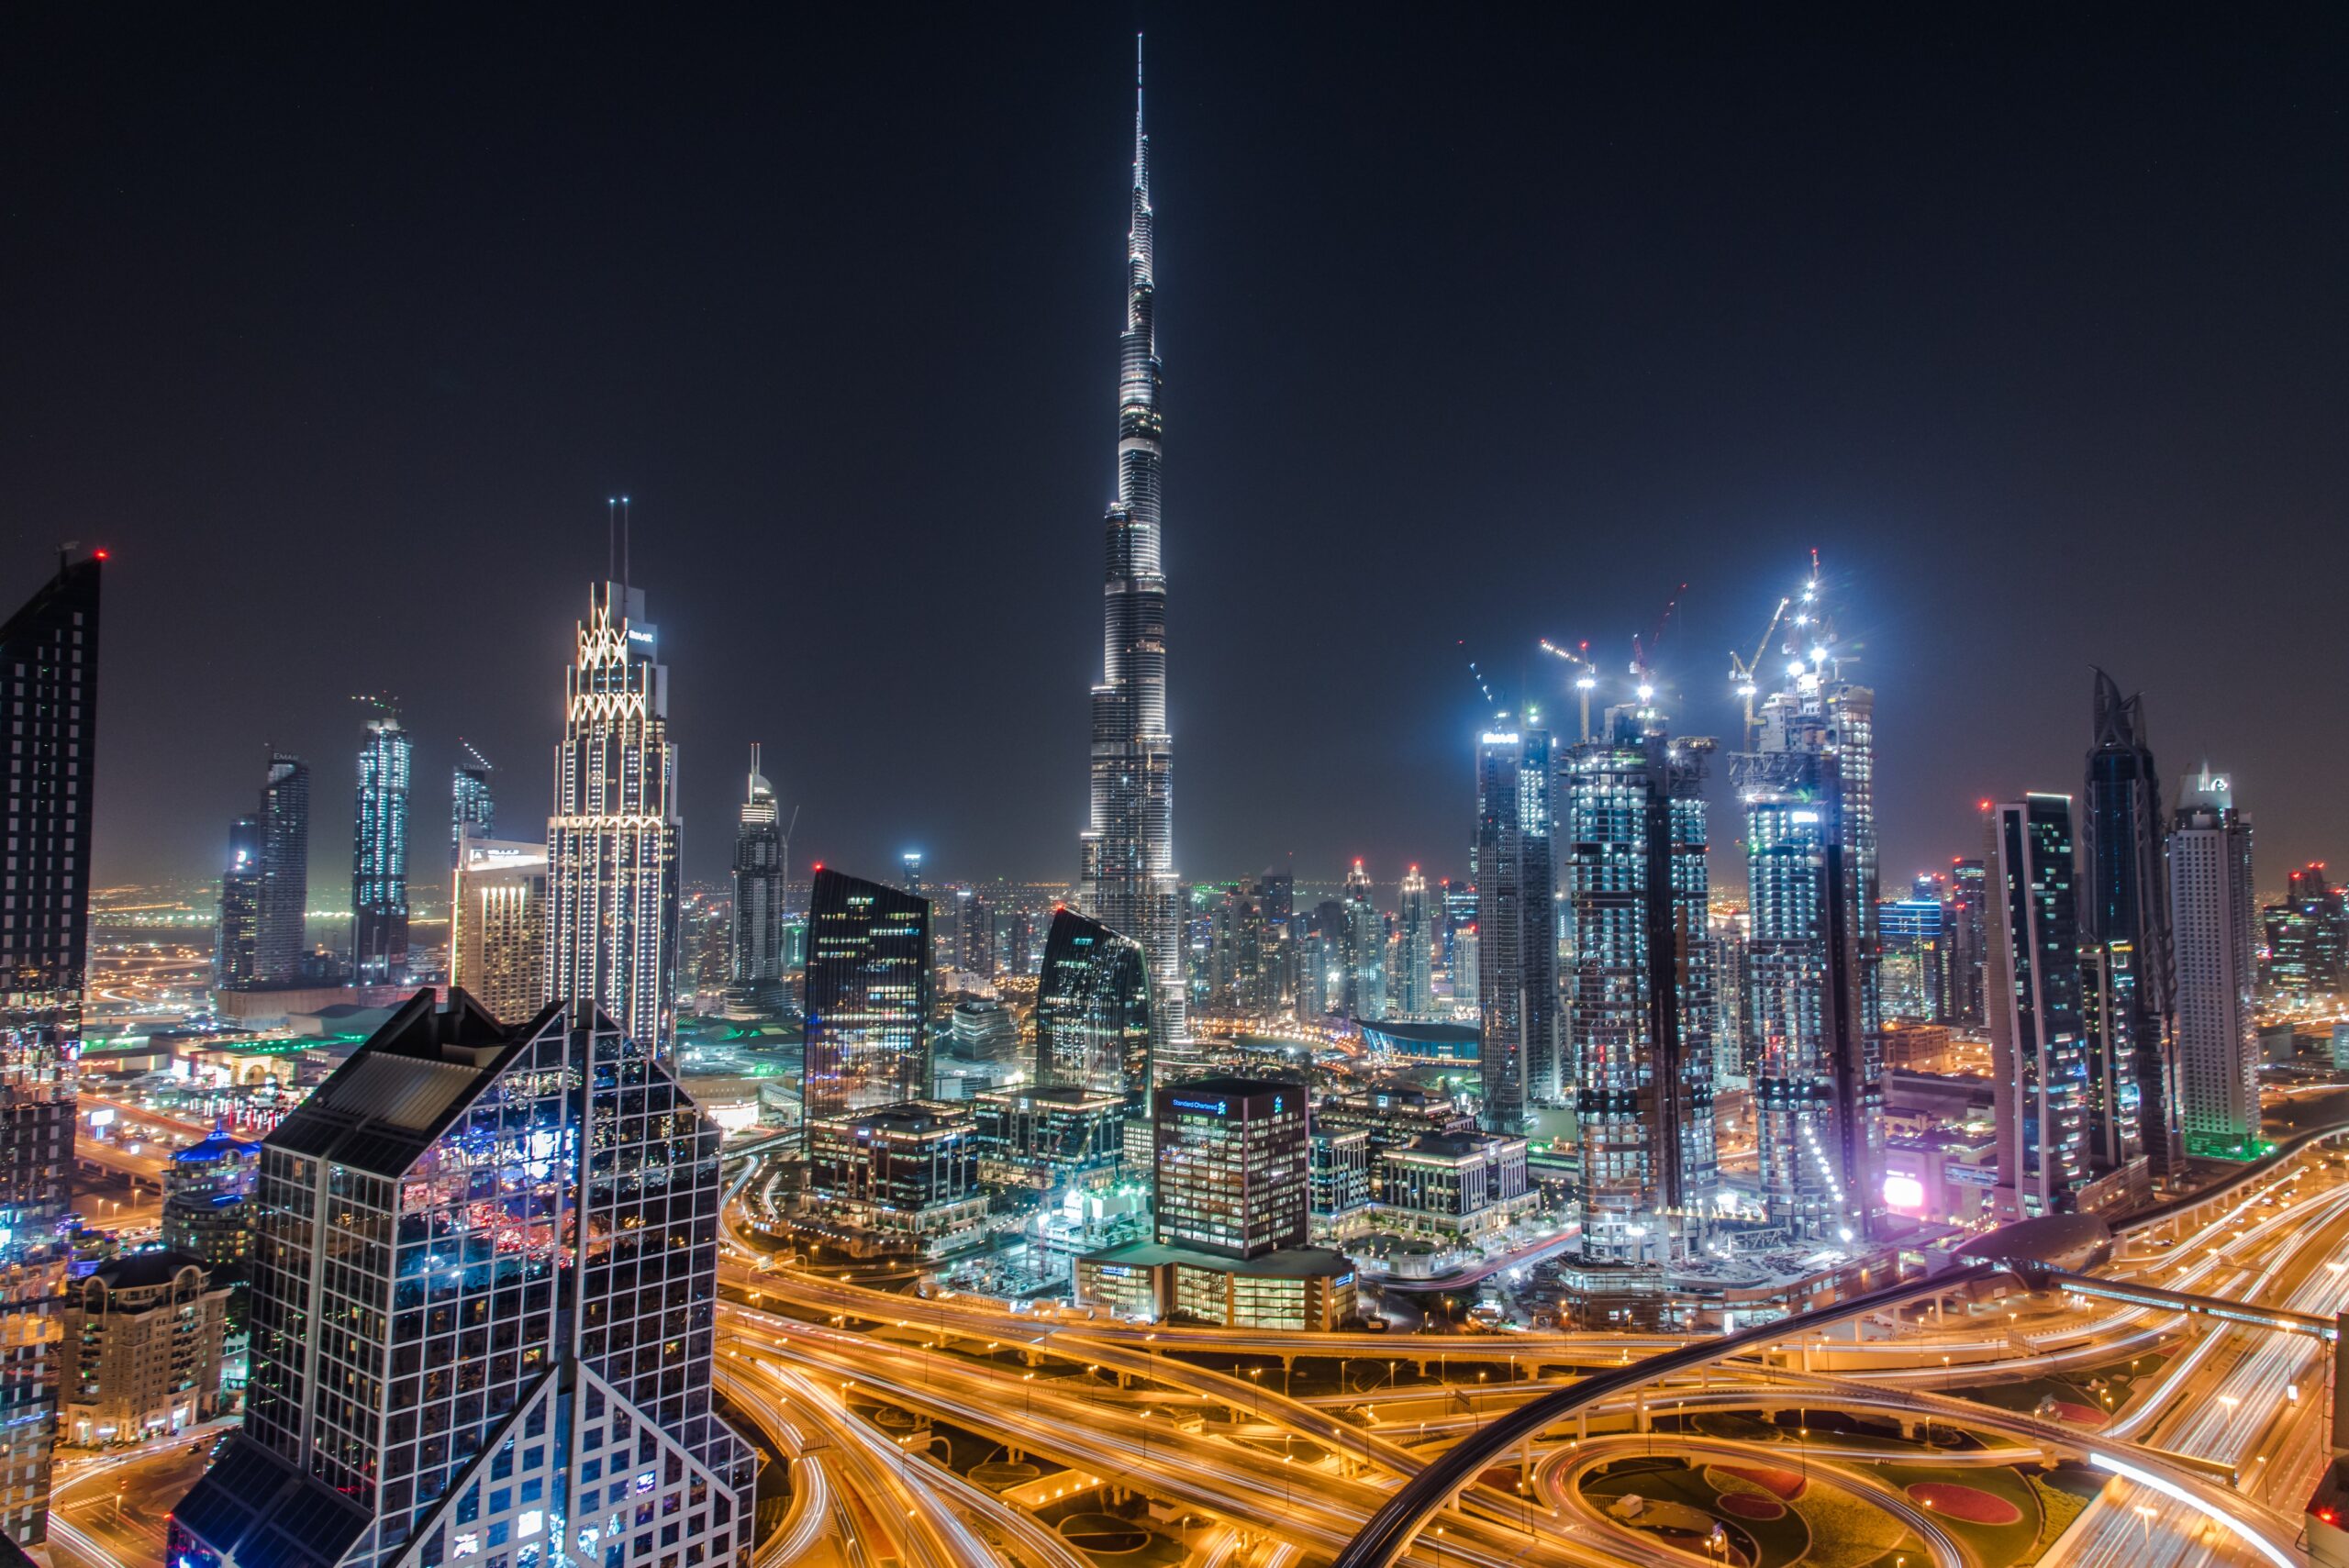 Dubai: La joya del desierto. Descubre los mejores lugares turísticos, desde el Burj Khalifa hasta el zoco de las especias, en la ciudad más lujosa y exótica del mundo